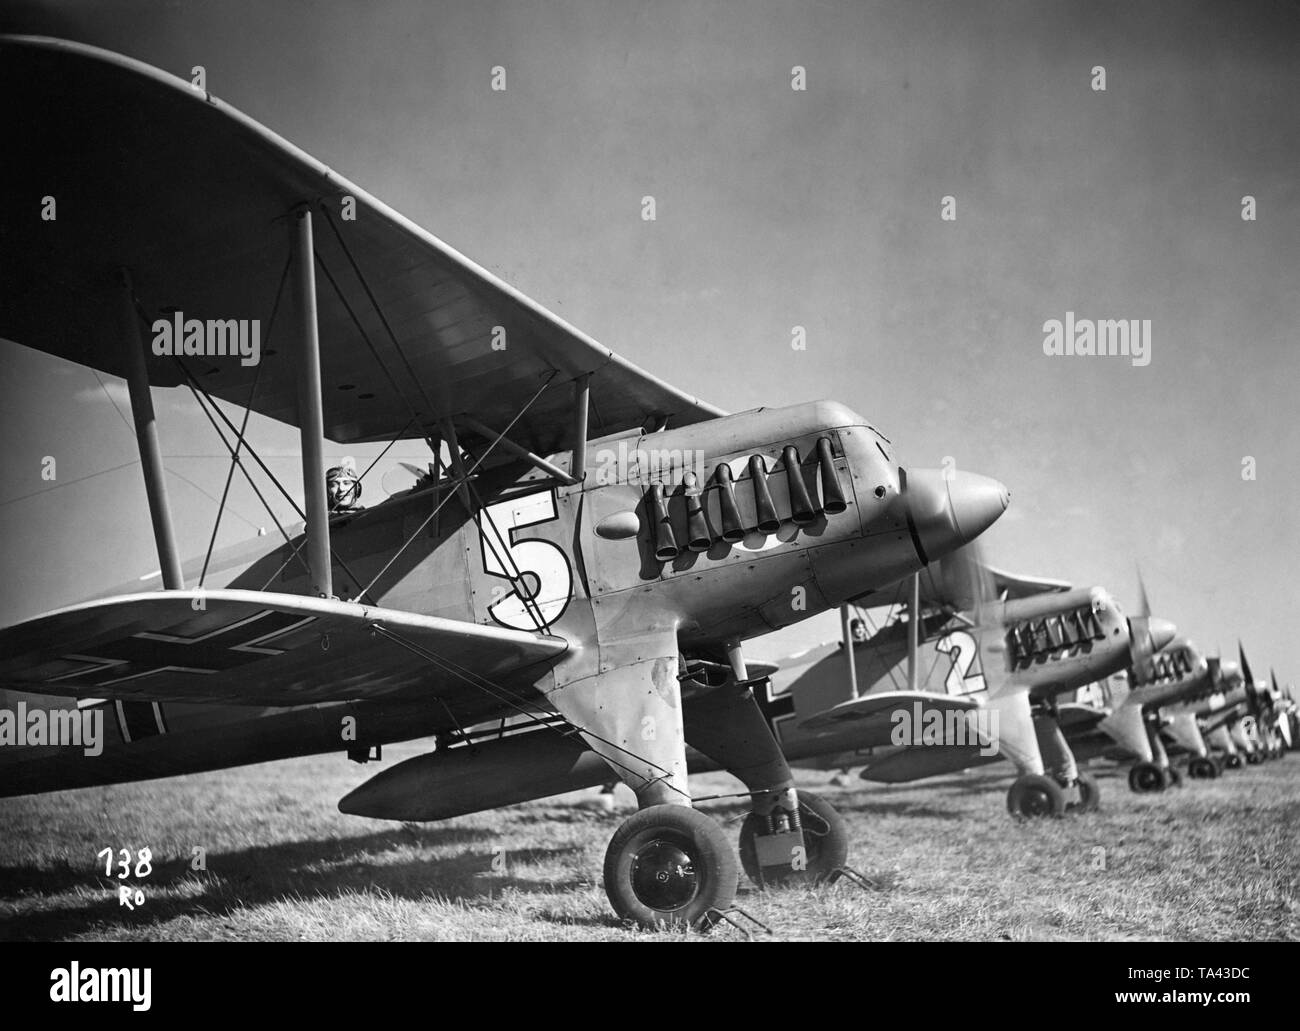 Das Bild zeigt ein Pilot am Steuer eines Heinkel He 51, weitere Flugzeuge dieses Typs Neben ausgekleidet sind. Es ist ein Bild von der NS-Propaganda Film "Pour le Merite" aus dem Jahr 1938. Stockfoto